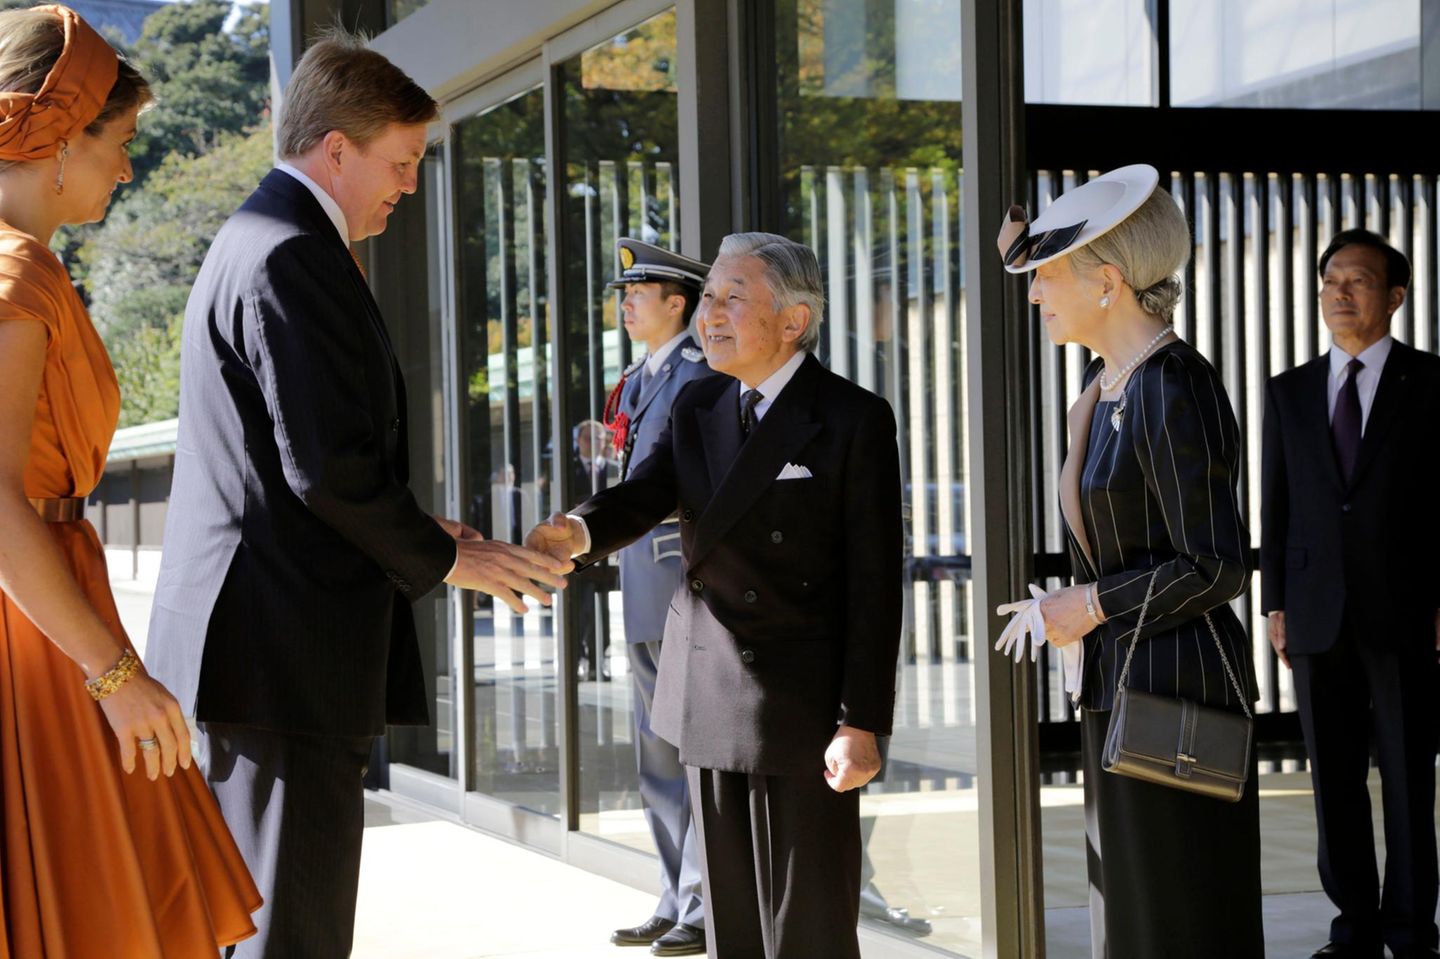 Tag 1  Herzlicher Empfang vor dem kaiserlichen Palast: Kaiser Akihito und Kaiserin Michiko begrüßen das niederländische Königspaar bei der Ankunft.